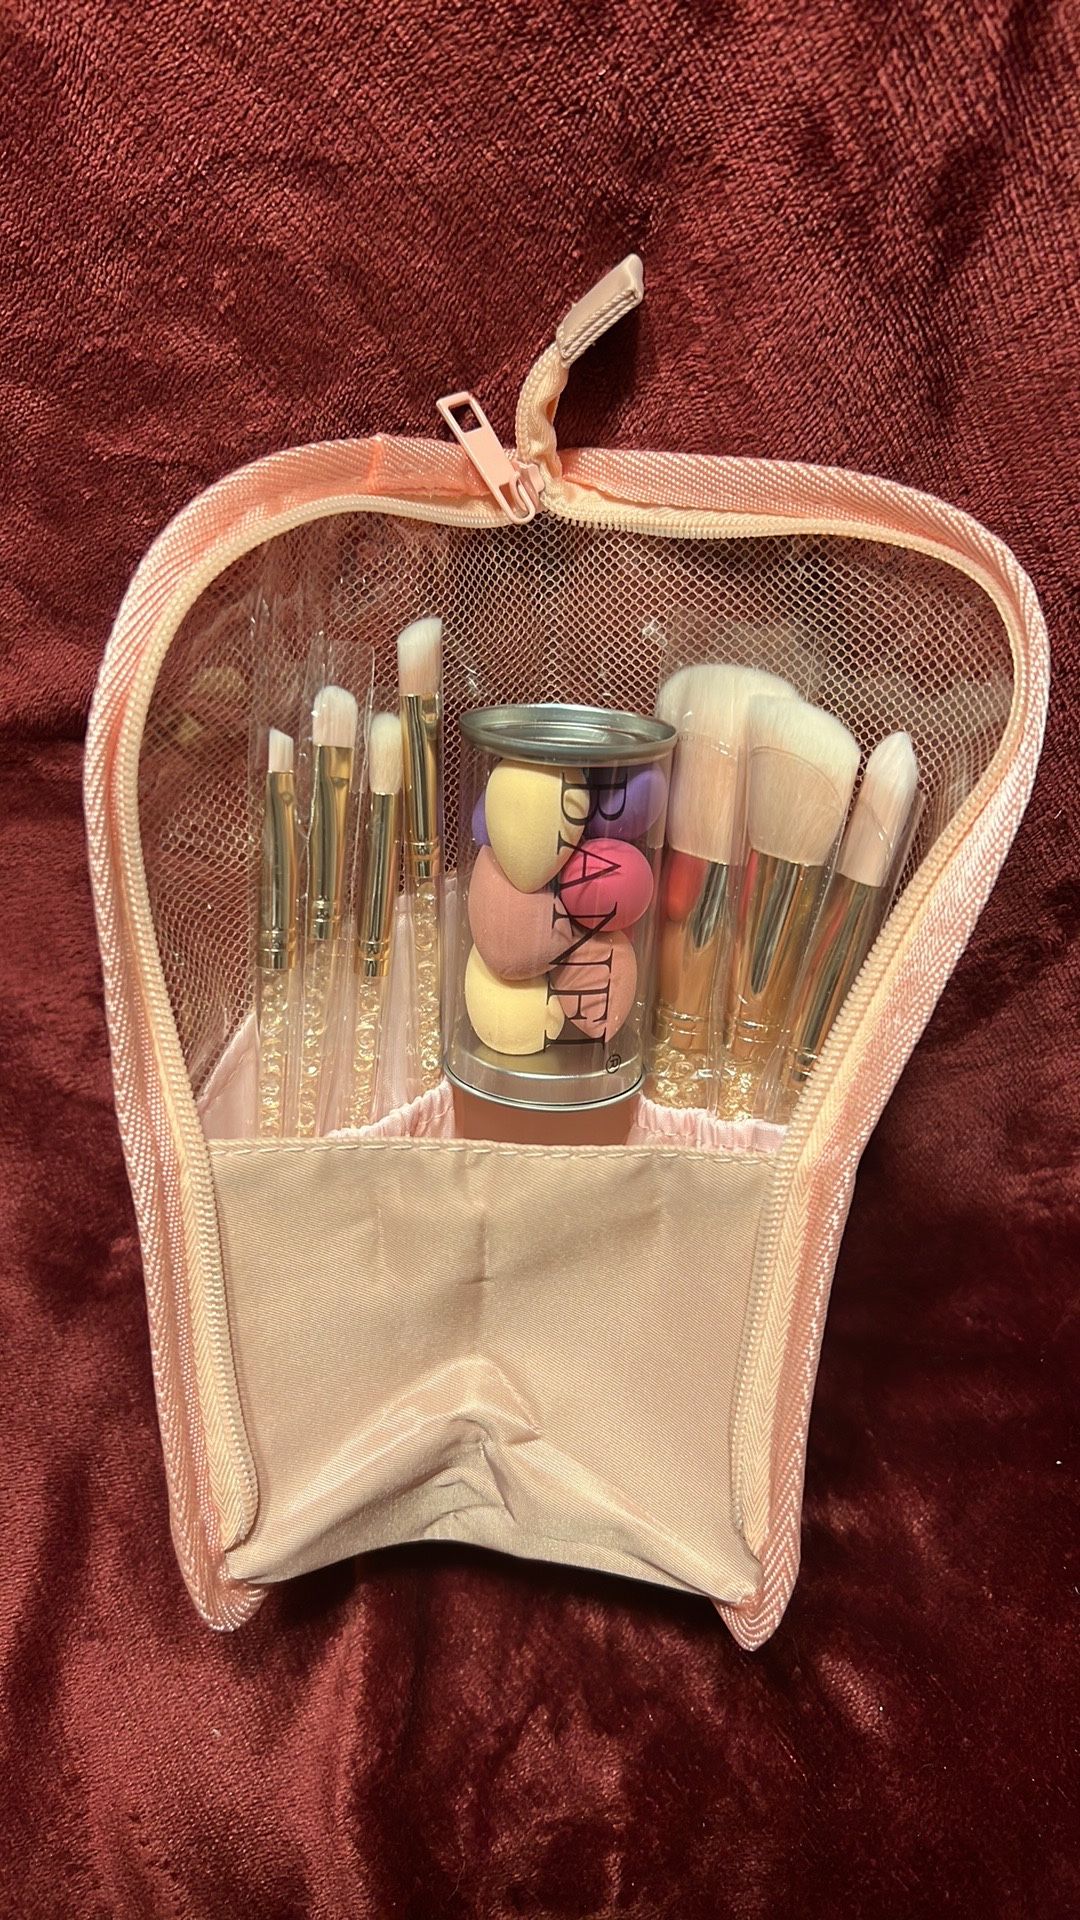 MakeUp Bag, 7 Piece MakeUp Brush Set & Mini Sponge Set *NEW*